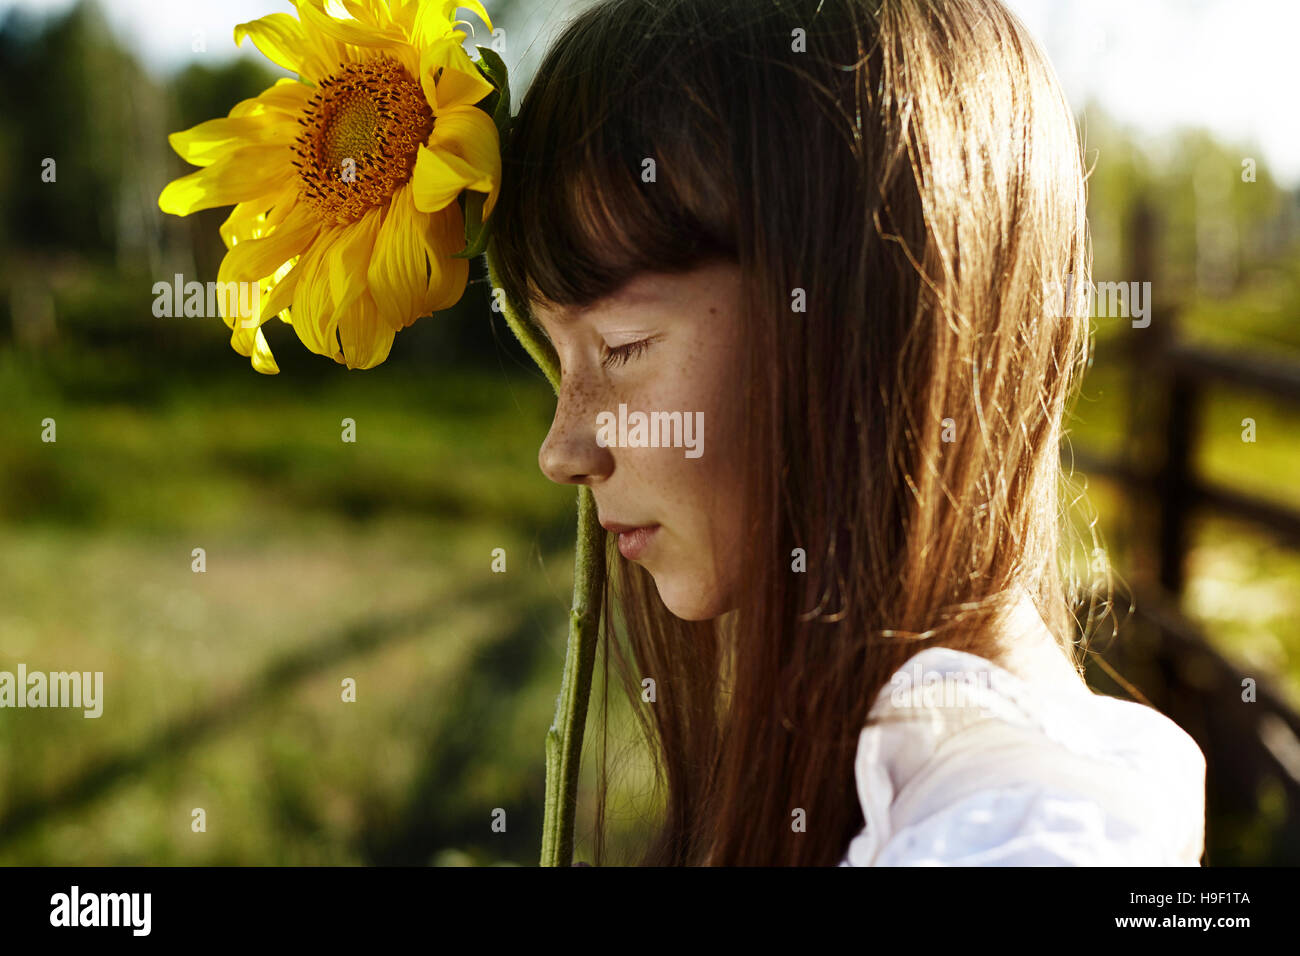 Profil de Caucasian girl avec rousseur holding sunflower Banque D'Images